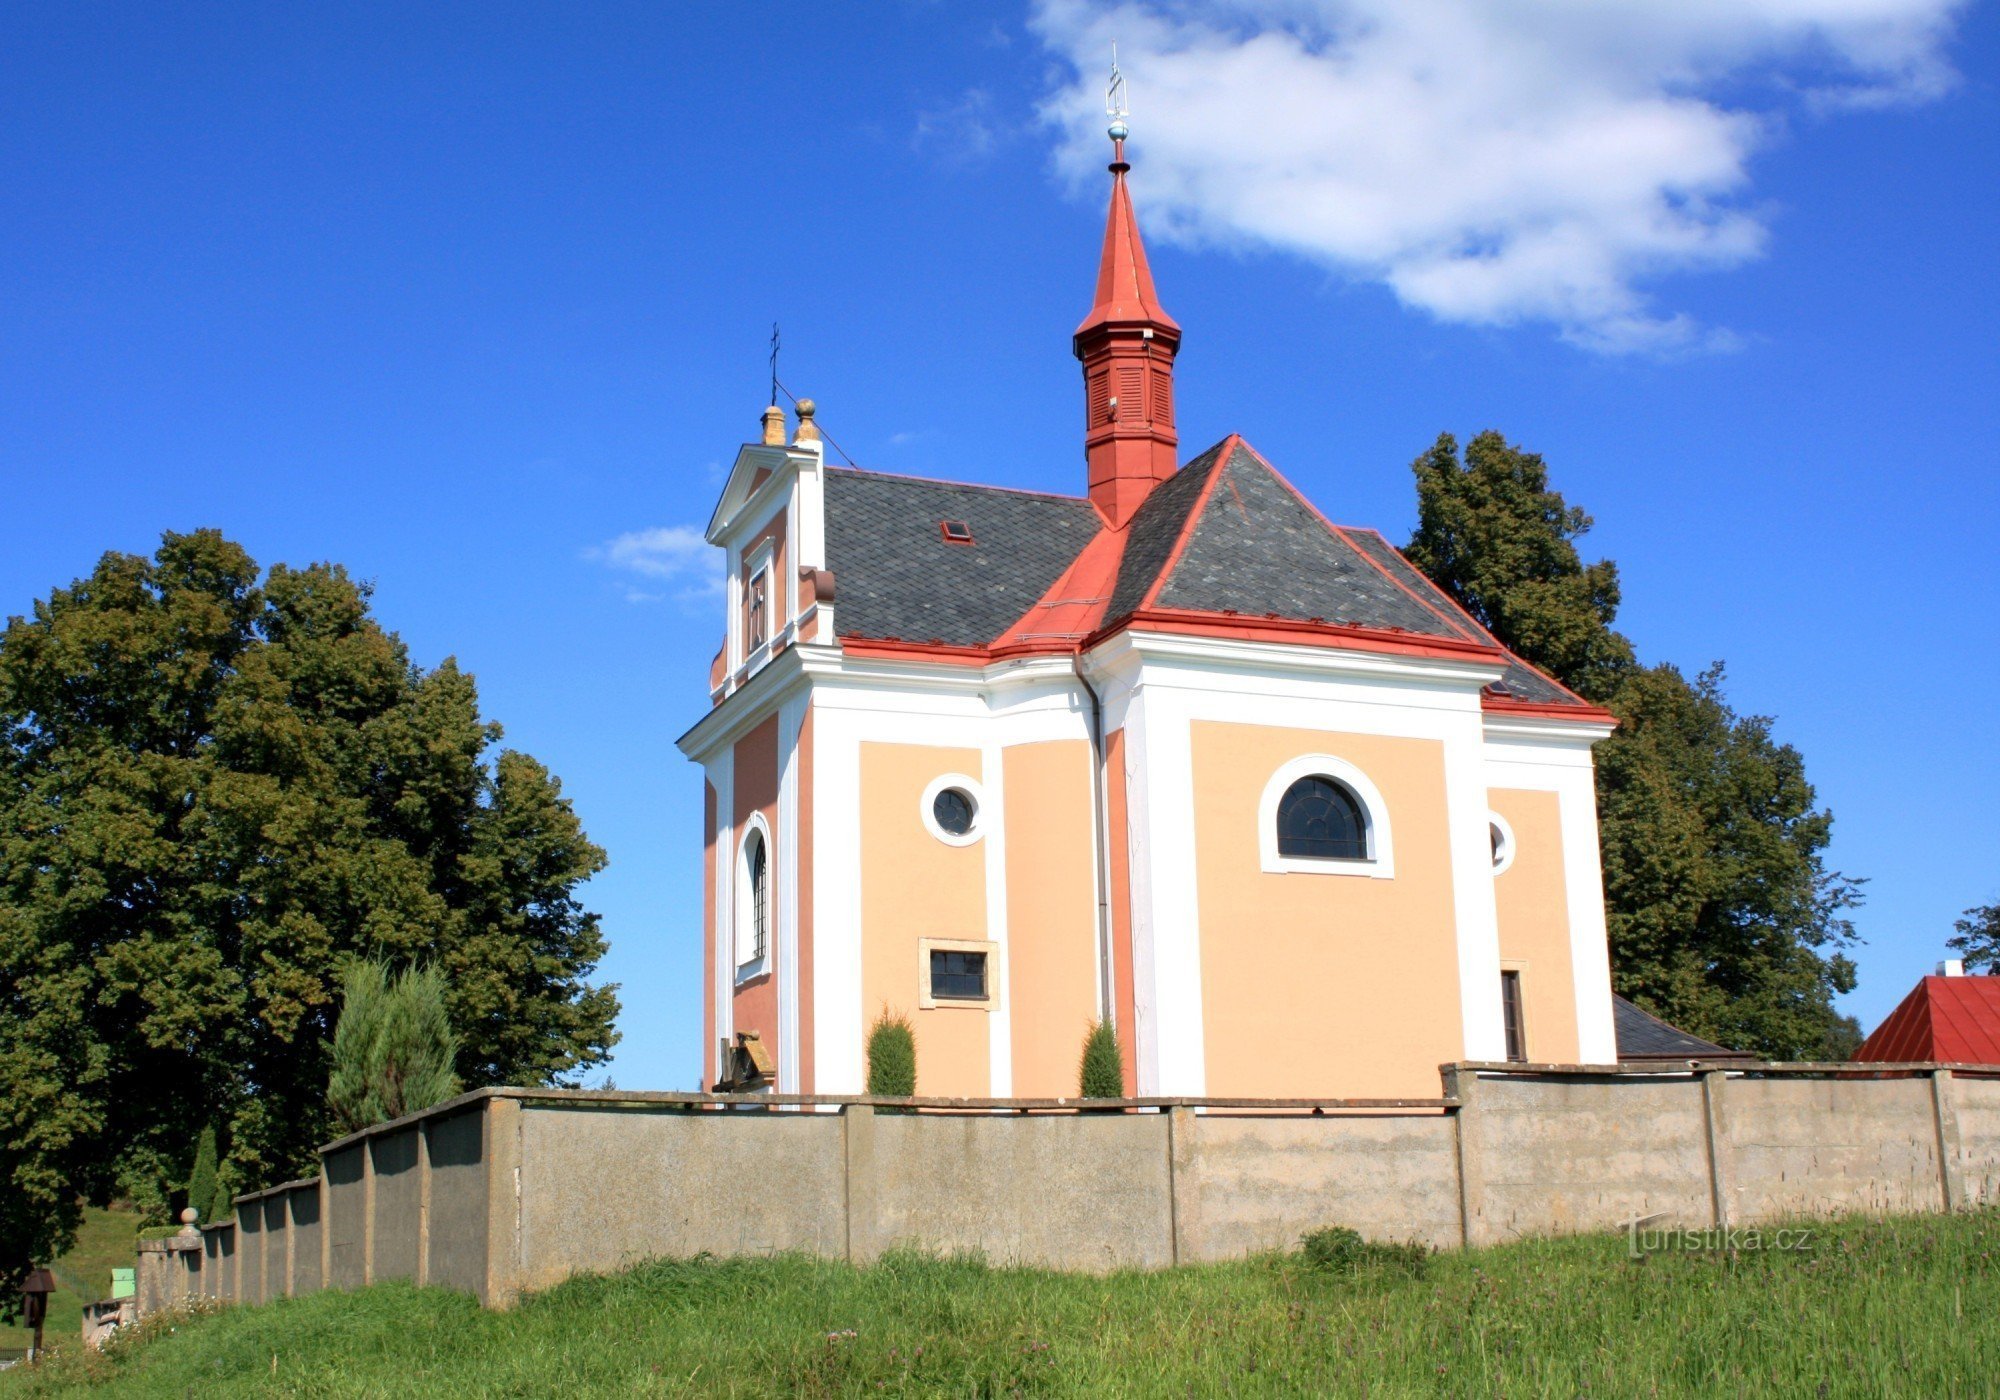 Pustá Kamenice - Kirche St. Anne